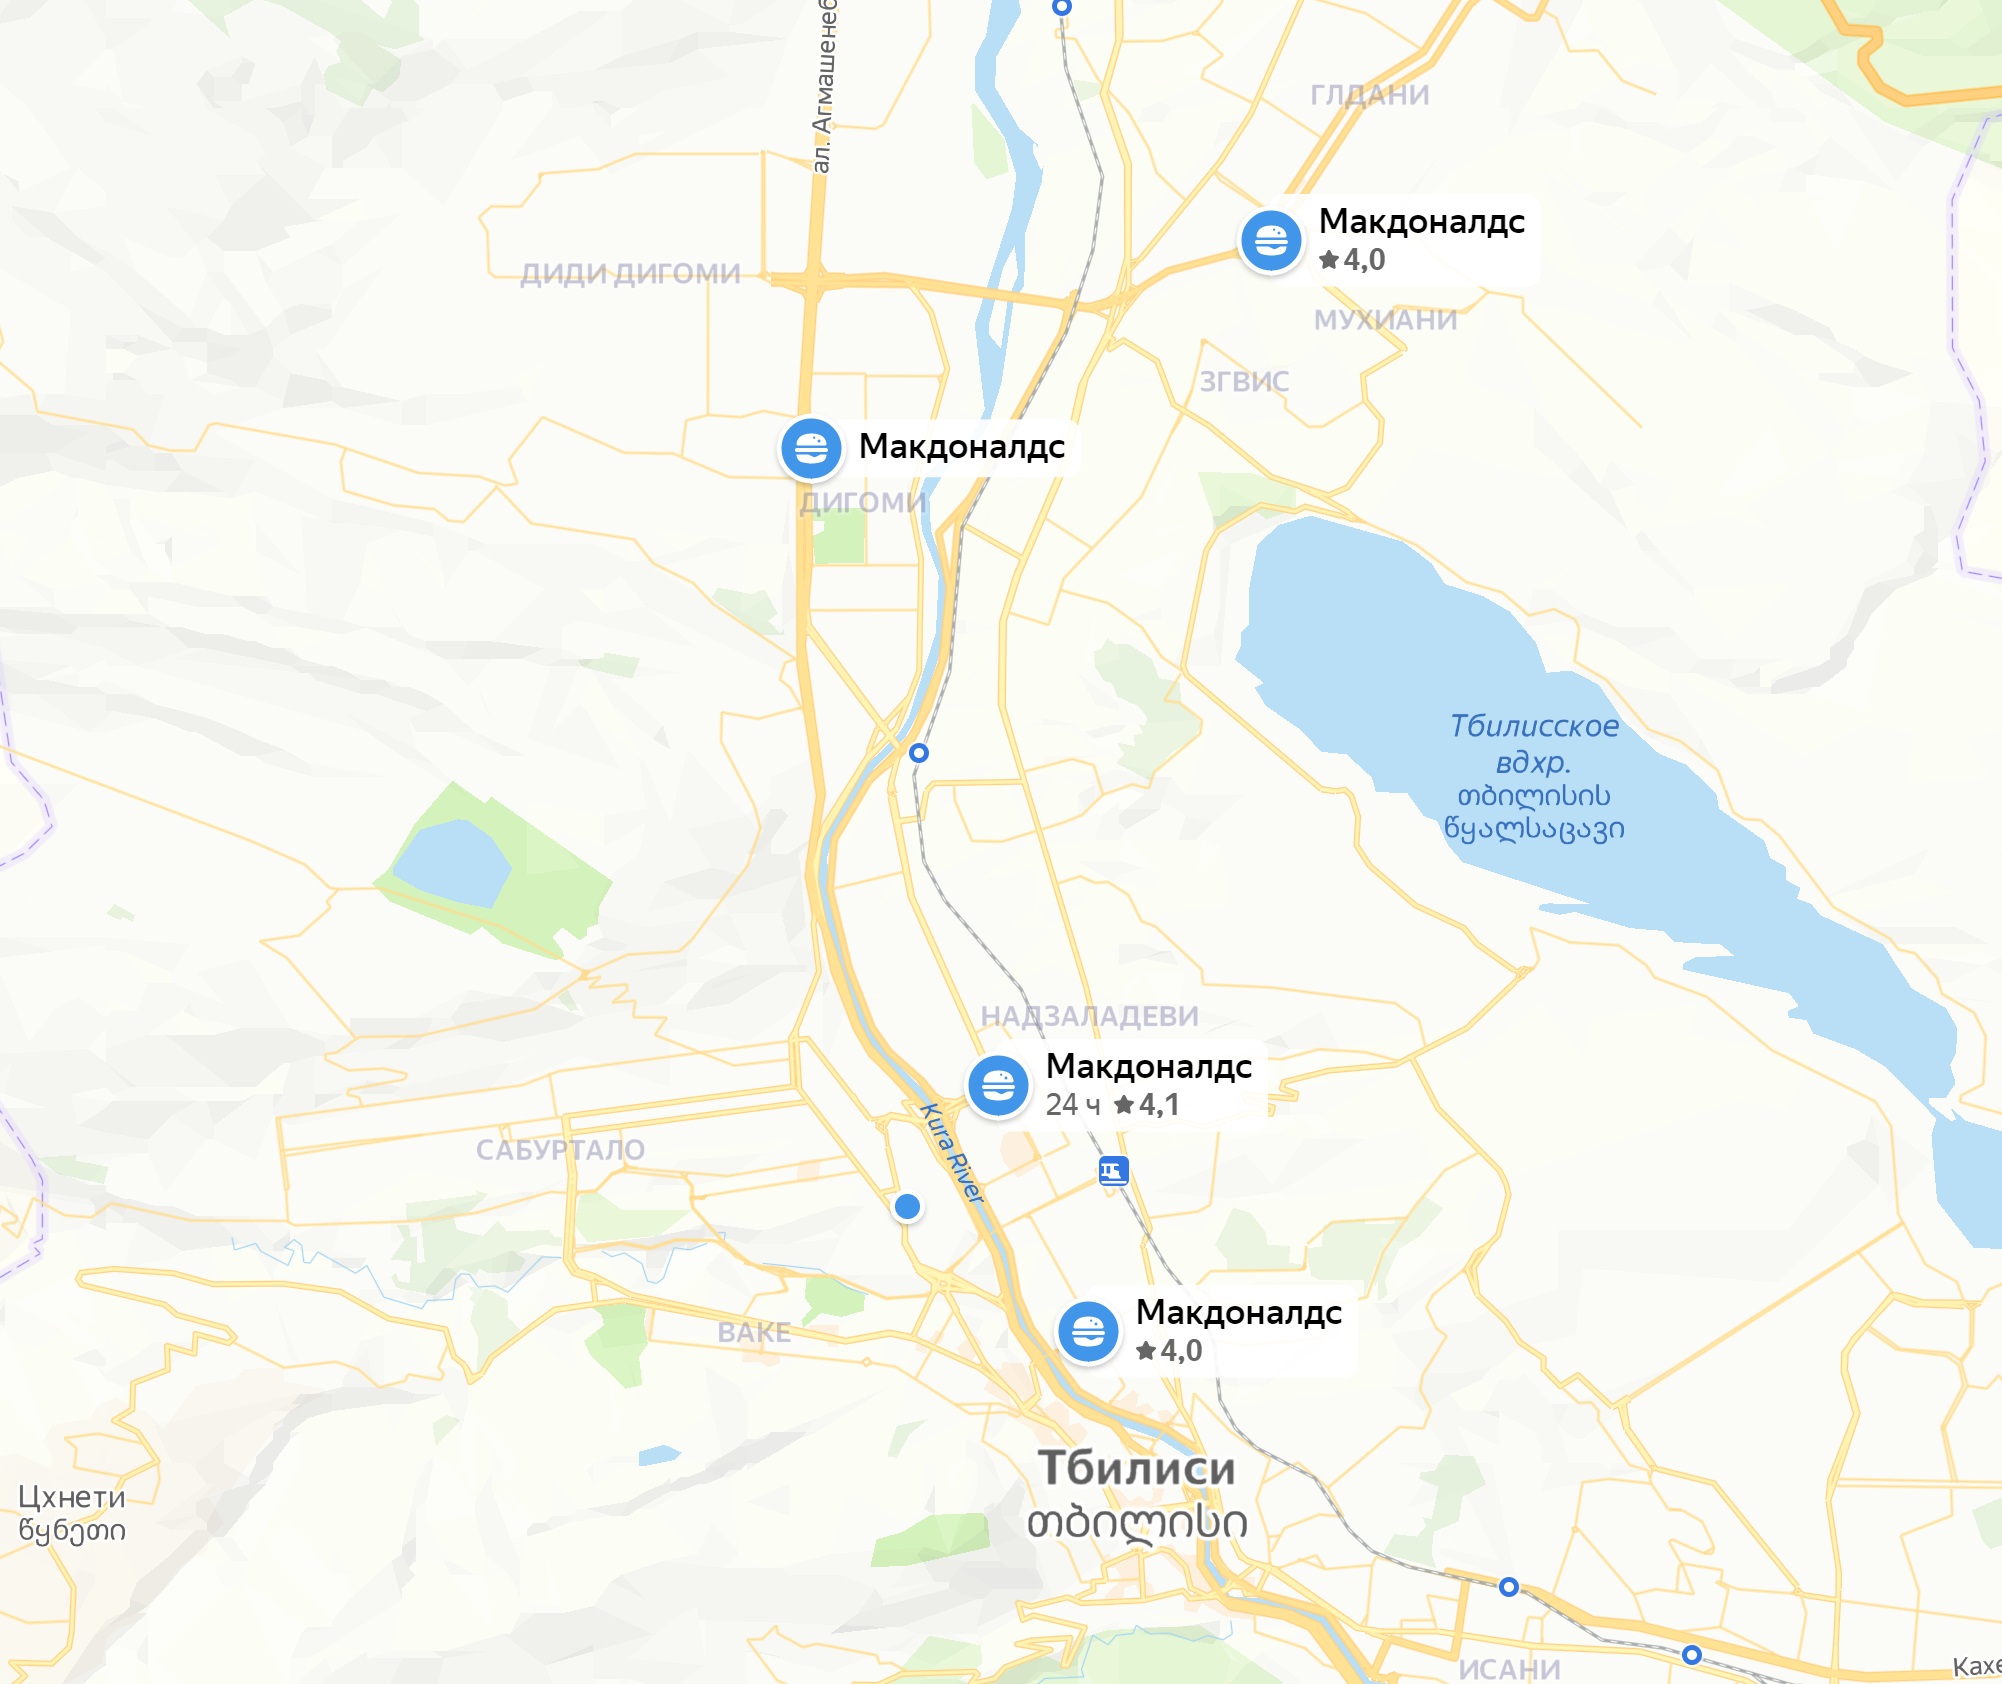 Есть ли фастфуд и стритфуд в городах Грузии, кроме Тбилиси?